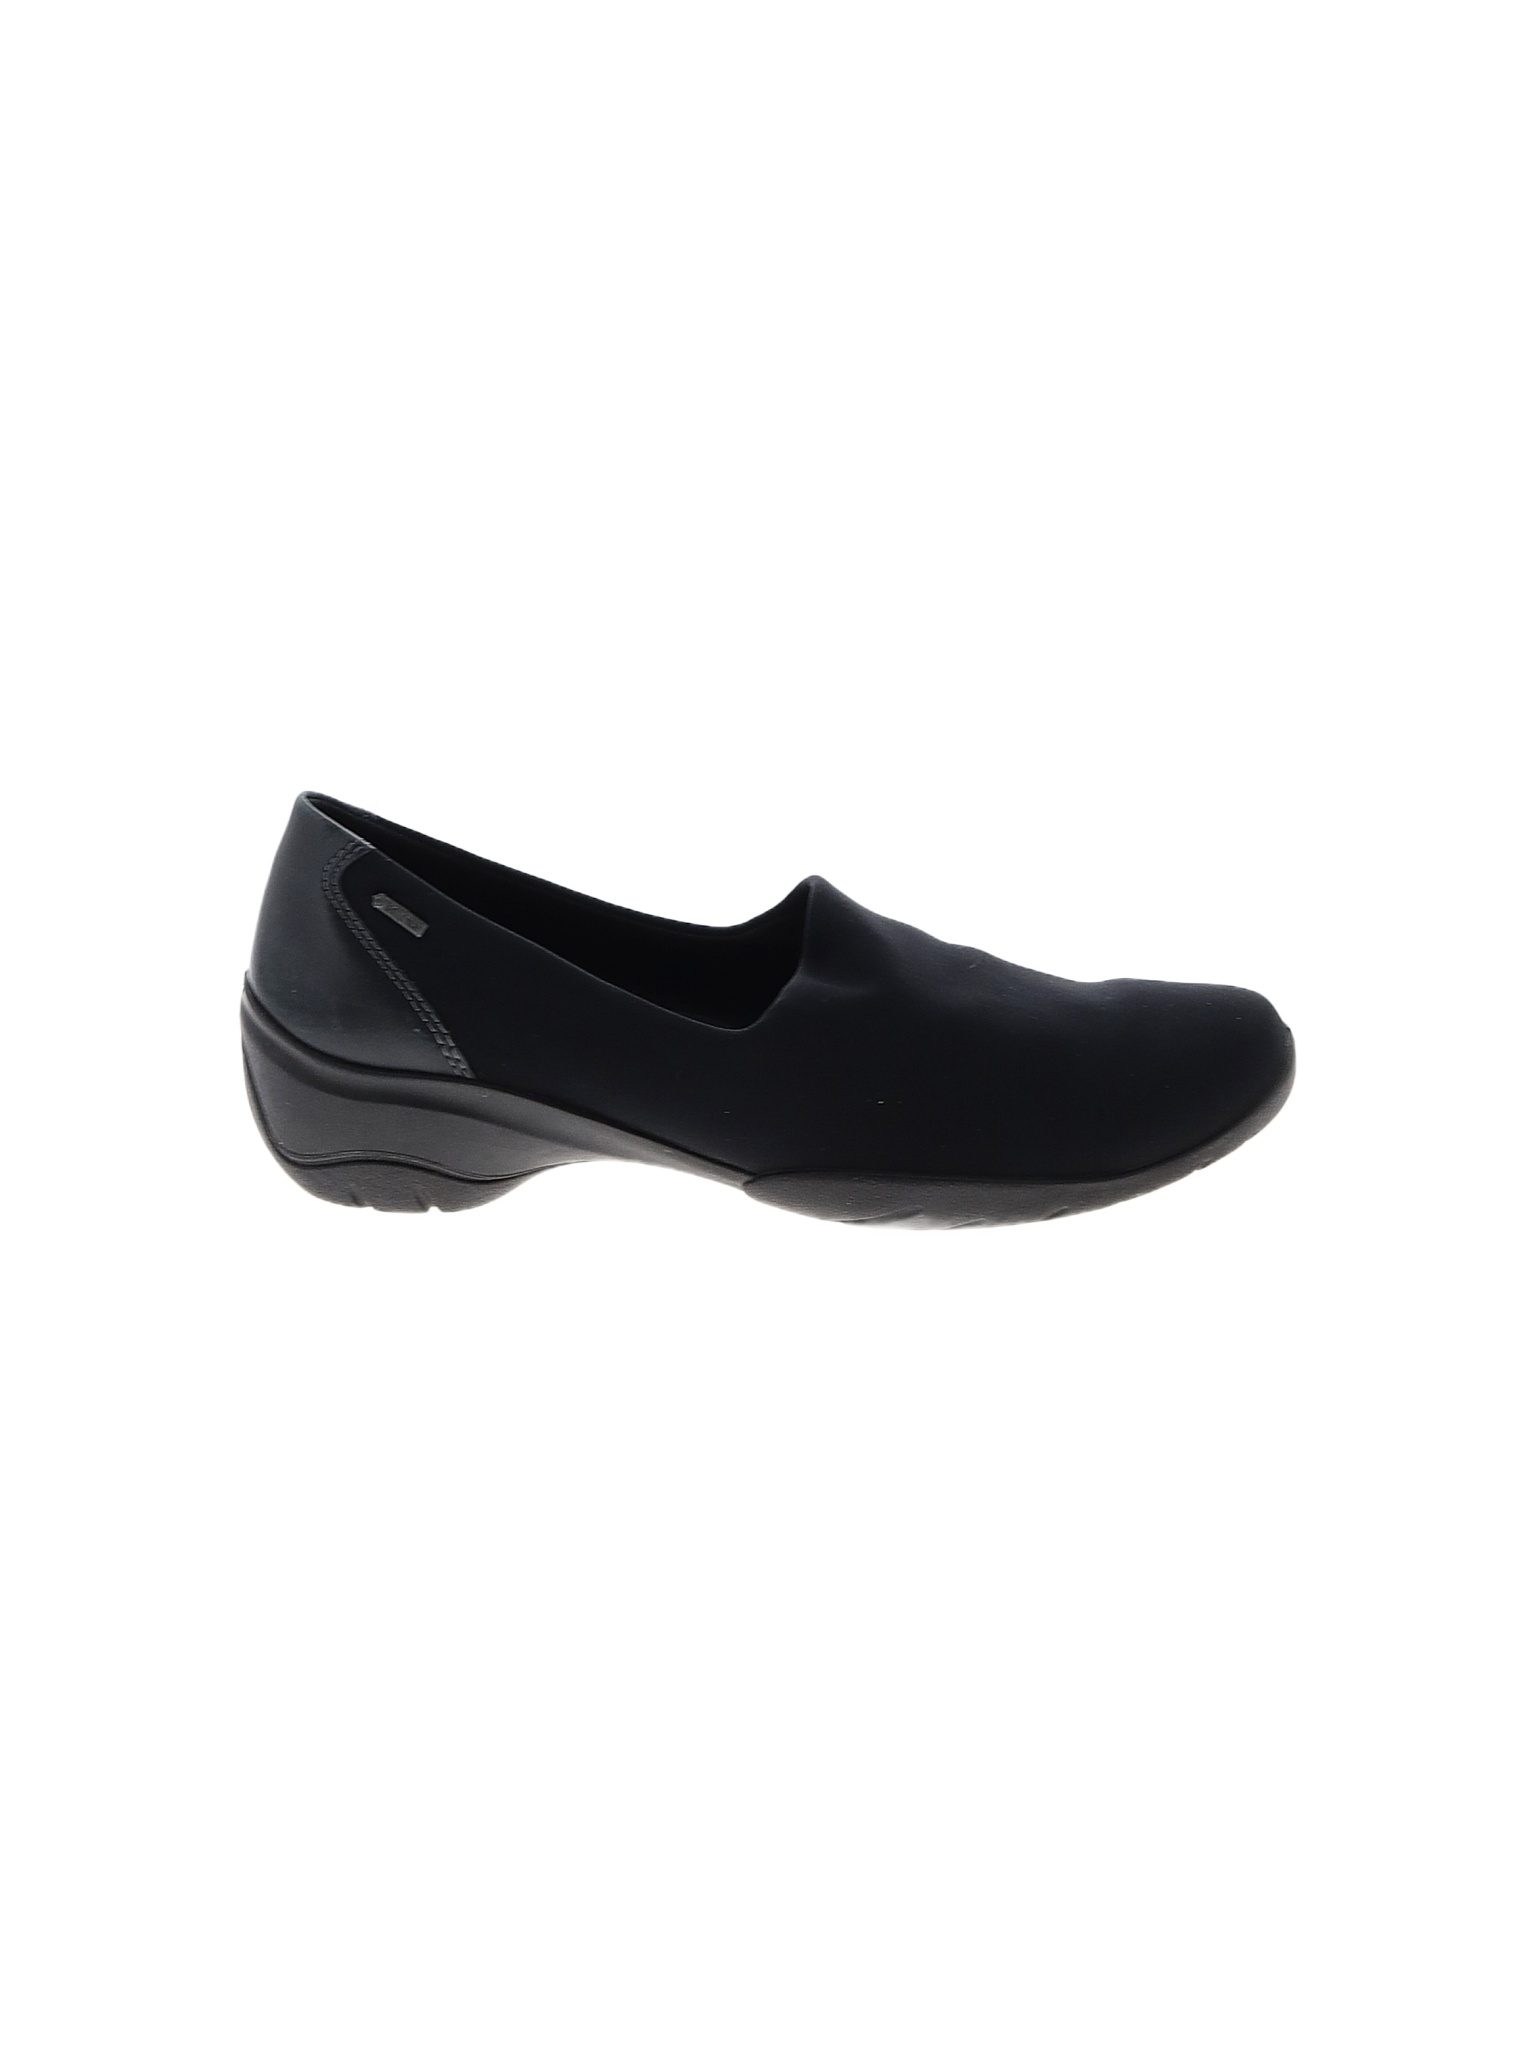 Ecco Solid Black Flats Size 40 (EU) - 69% off | thredUP